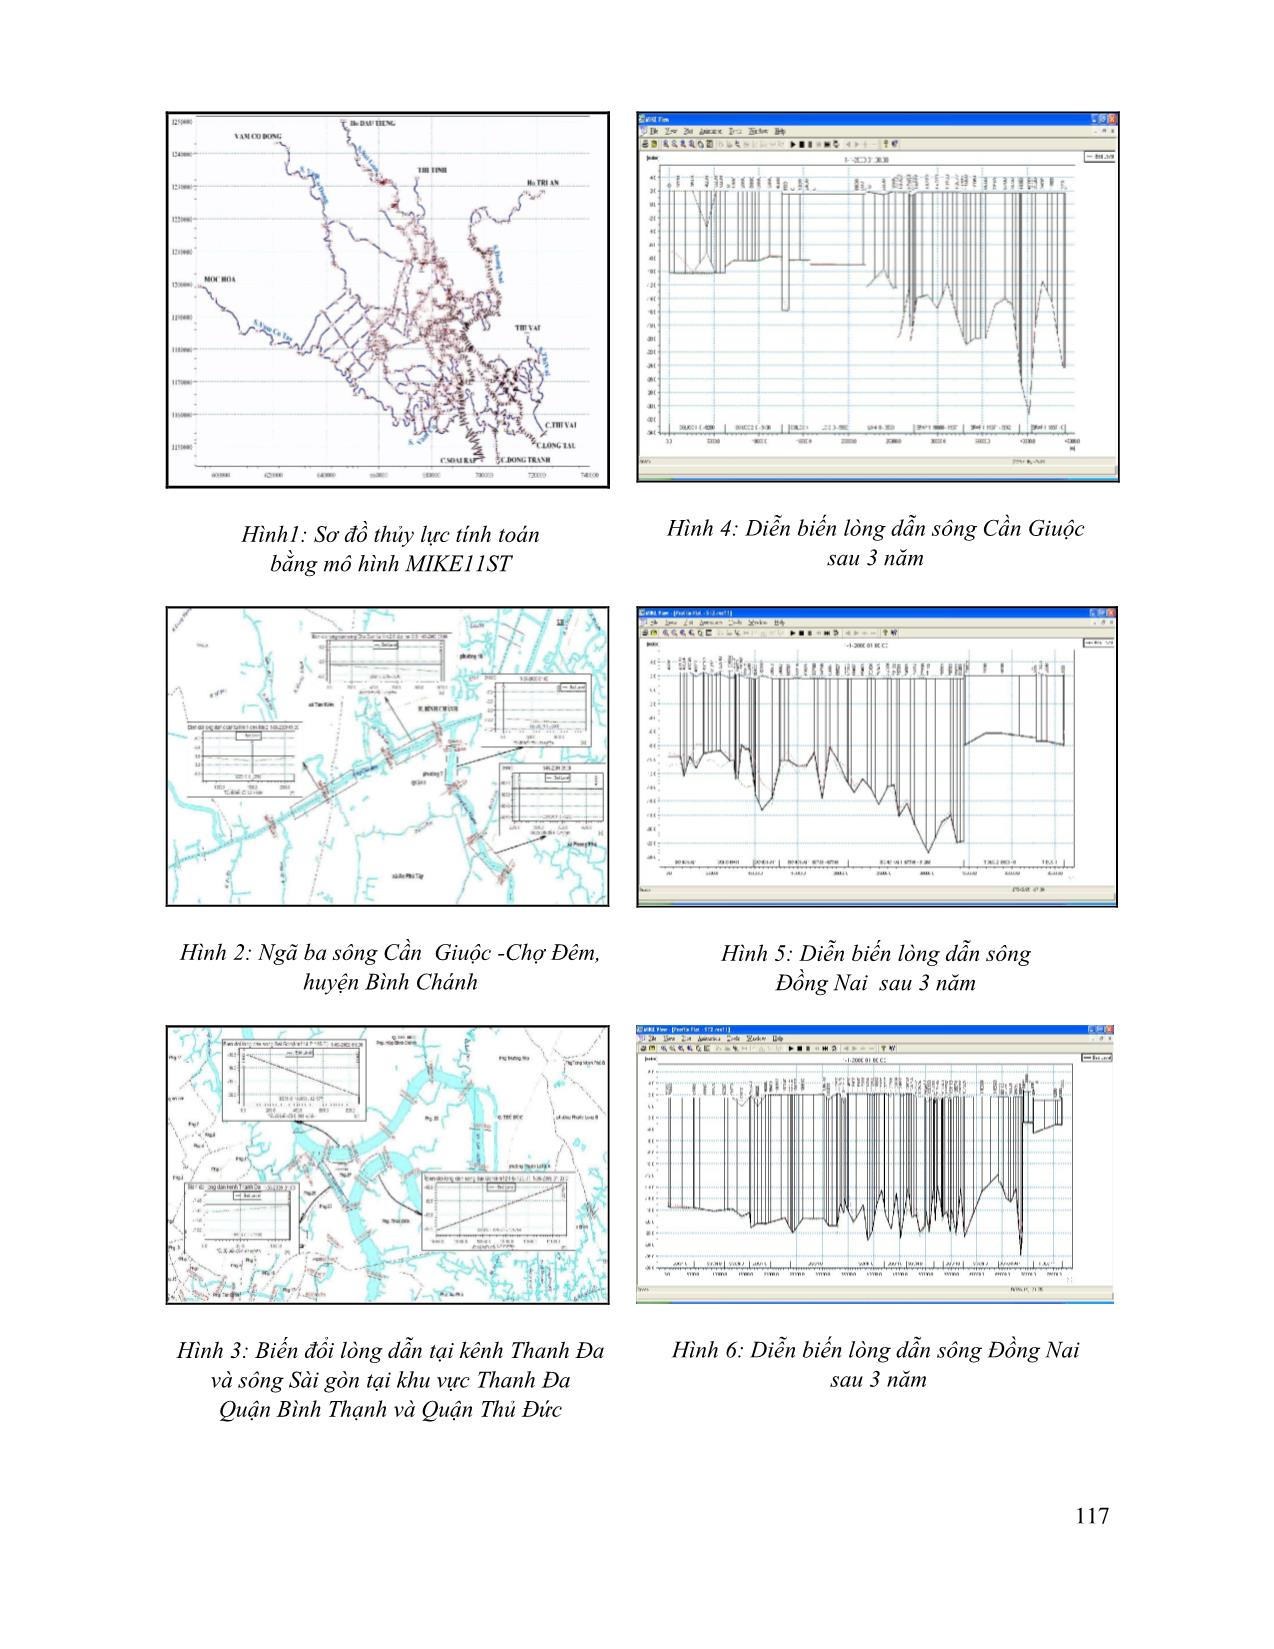 Một số vấn đề phân tích lựa chọn mô hình toán trong việc đánh giá diễn biến lòng dẫn sông Đồng Nai - Sài Gòn khu vực thành phố Hồ Chí Minh dưới ảnh hưởng của các công trình chống ngập trang 4